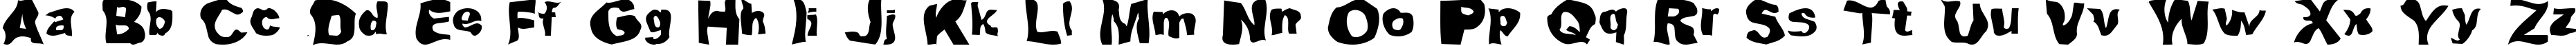 Пример написания английского алфавита шрифтом Lou